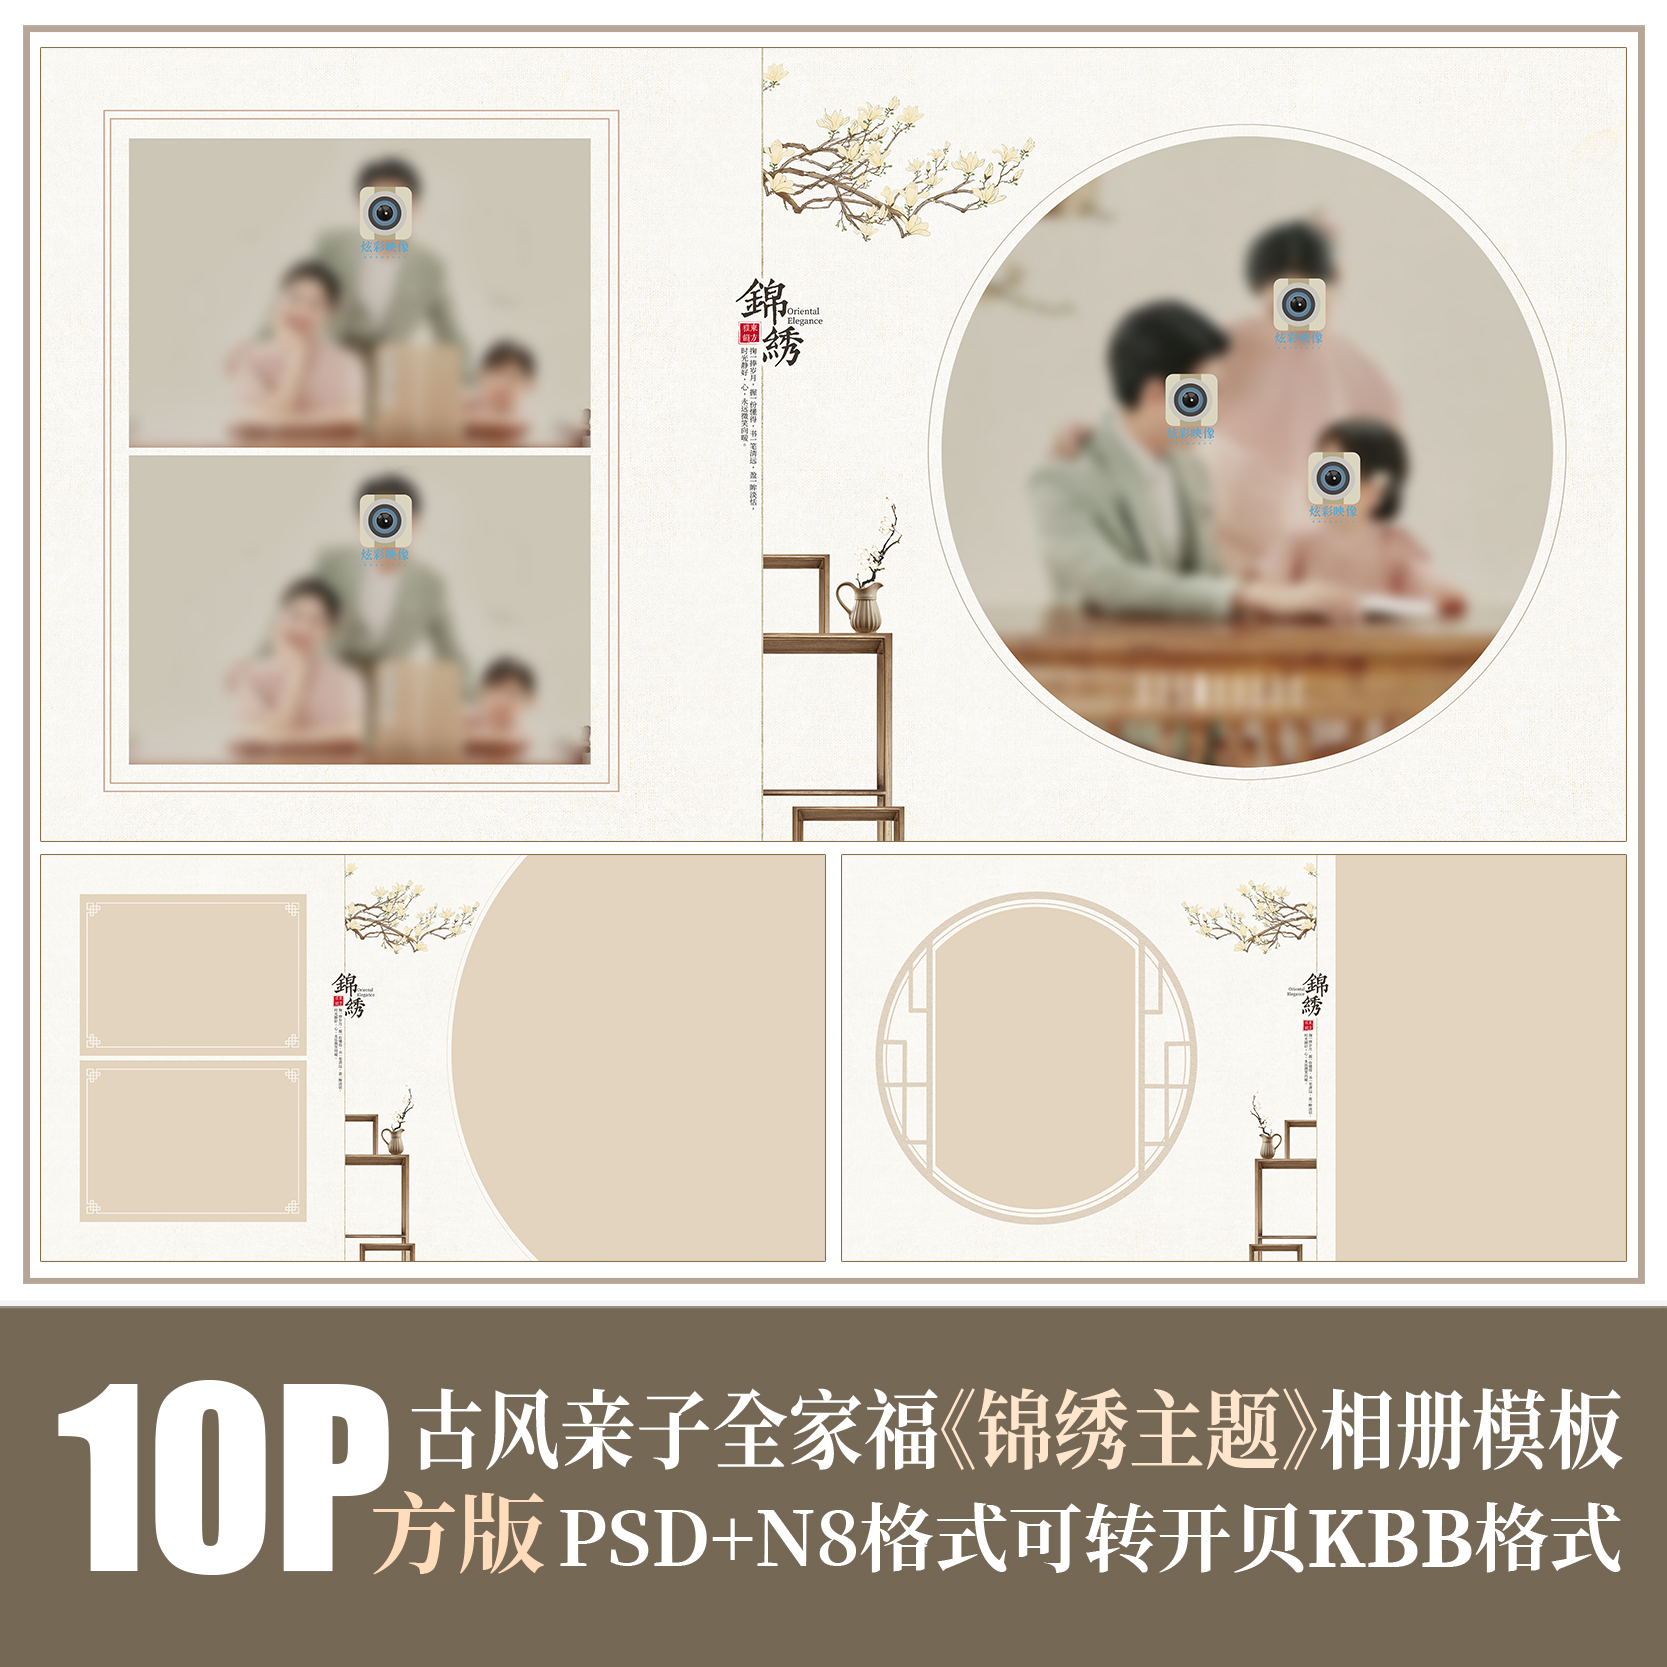 Q58全家福亲子PSD相册模版新中式旗袍古风工笔画摄影楼N8排版素材